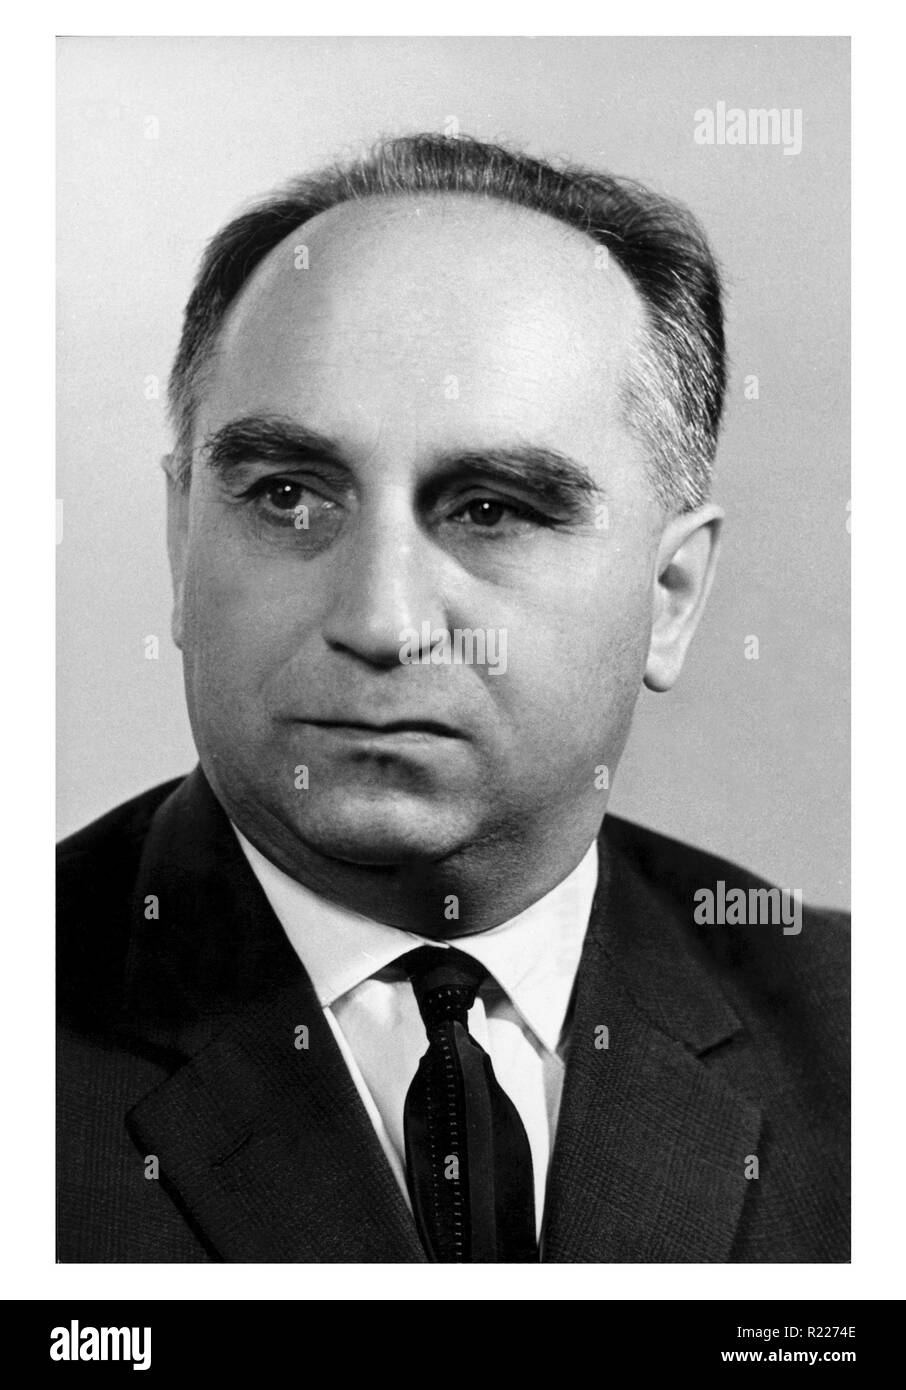 Stefan Jedrychowski (9. Mai 1910 - 1996) war ein polnischer Journalist und kommunistischen Politiker, der als Stellvertretender Premierminister, Minister für auswärtige Angelegenheiten und Finanzminister in Polen c. 1980 serviert. Stockfoto